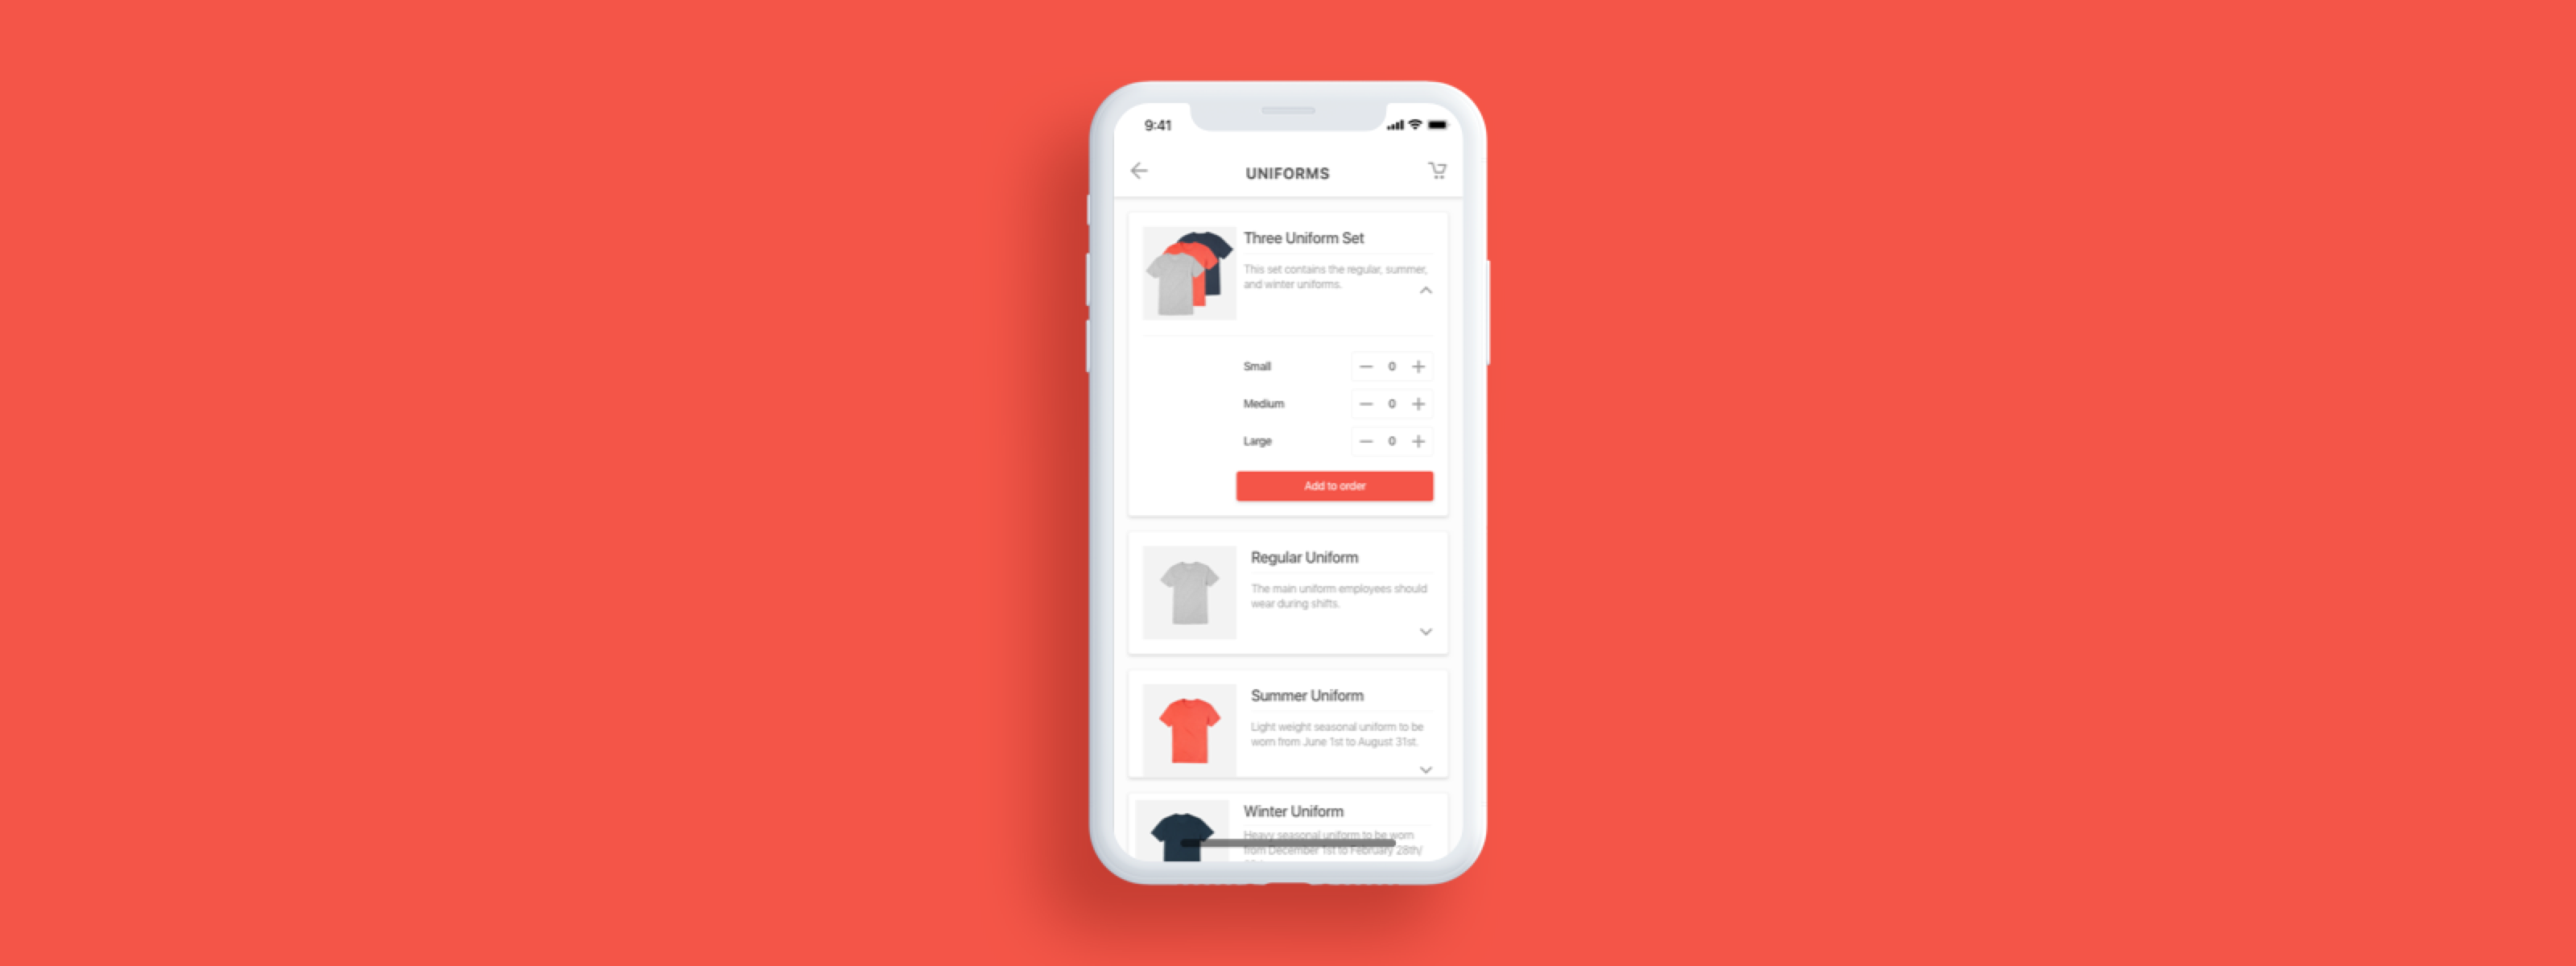 Uniform Distribution App: A Product Design Exercise